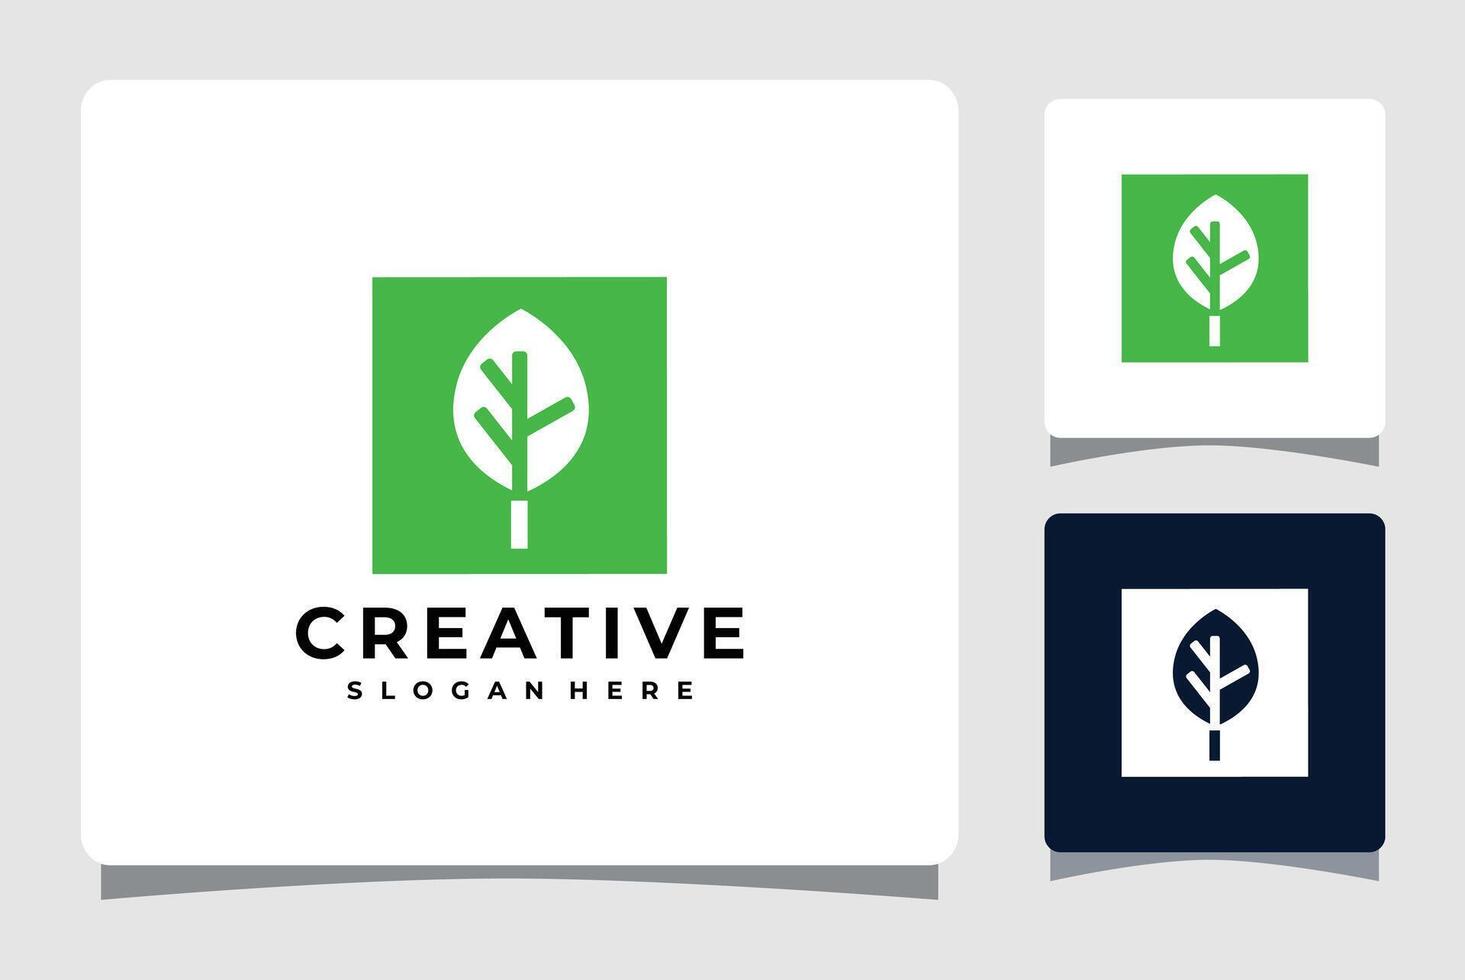 green leaf logo vector illustration design template